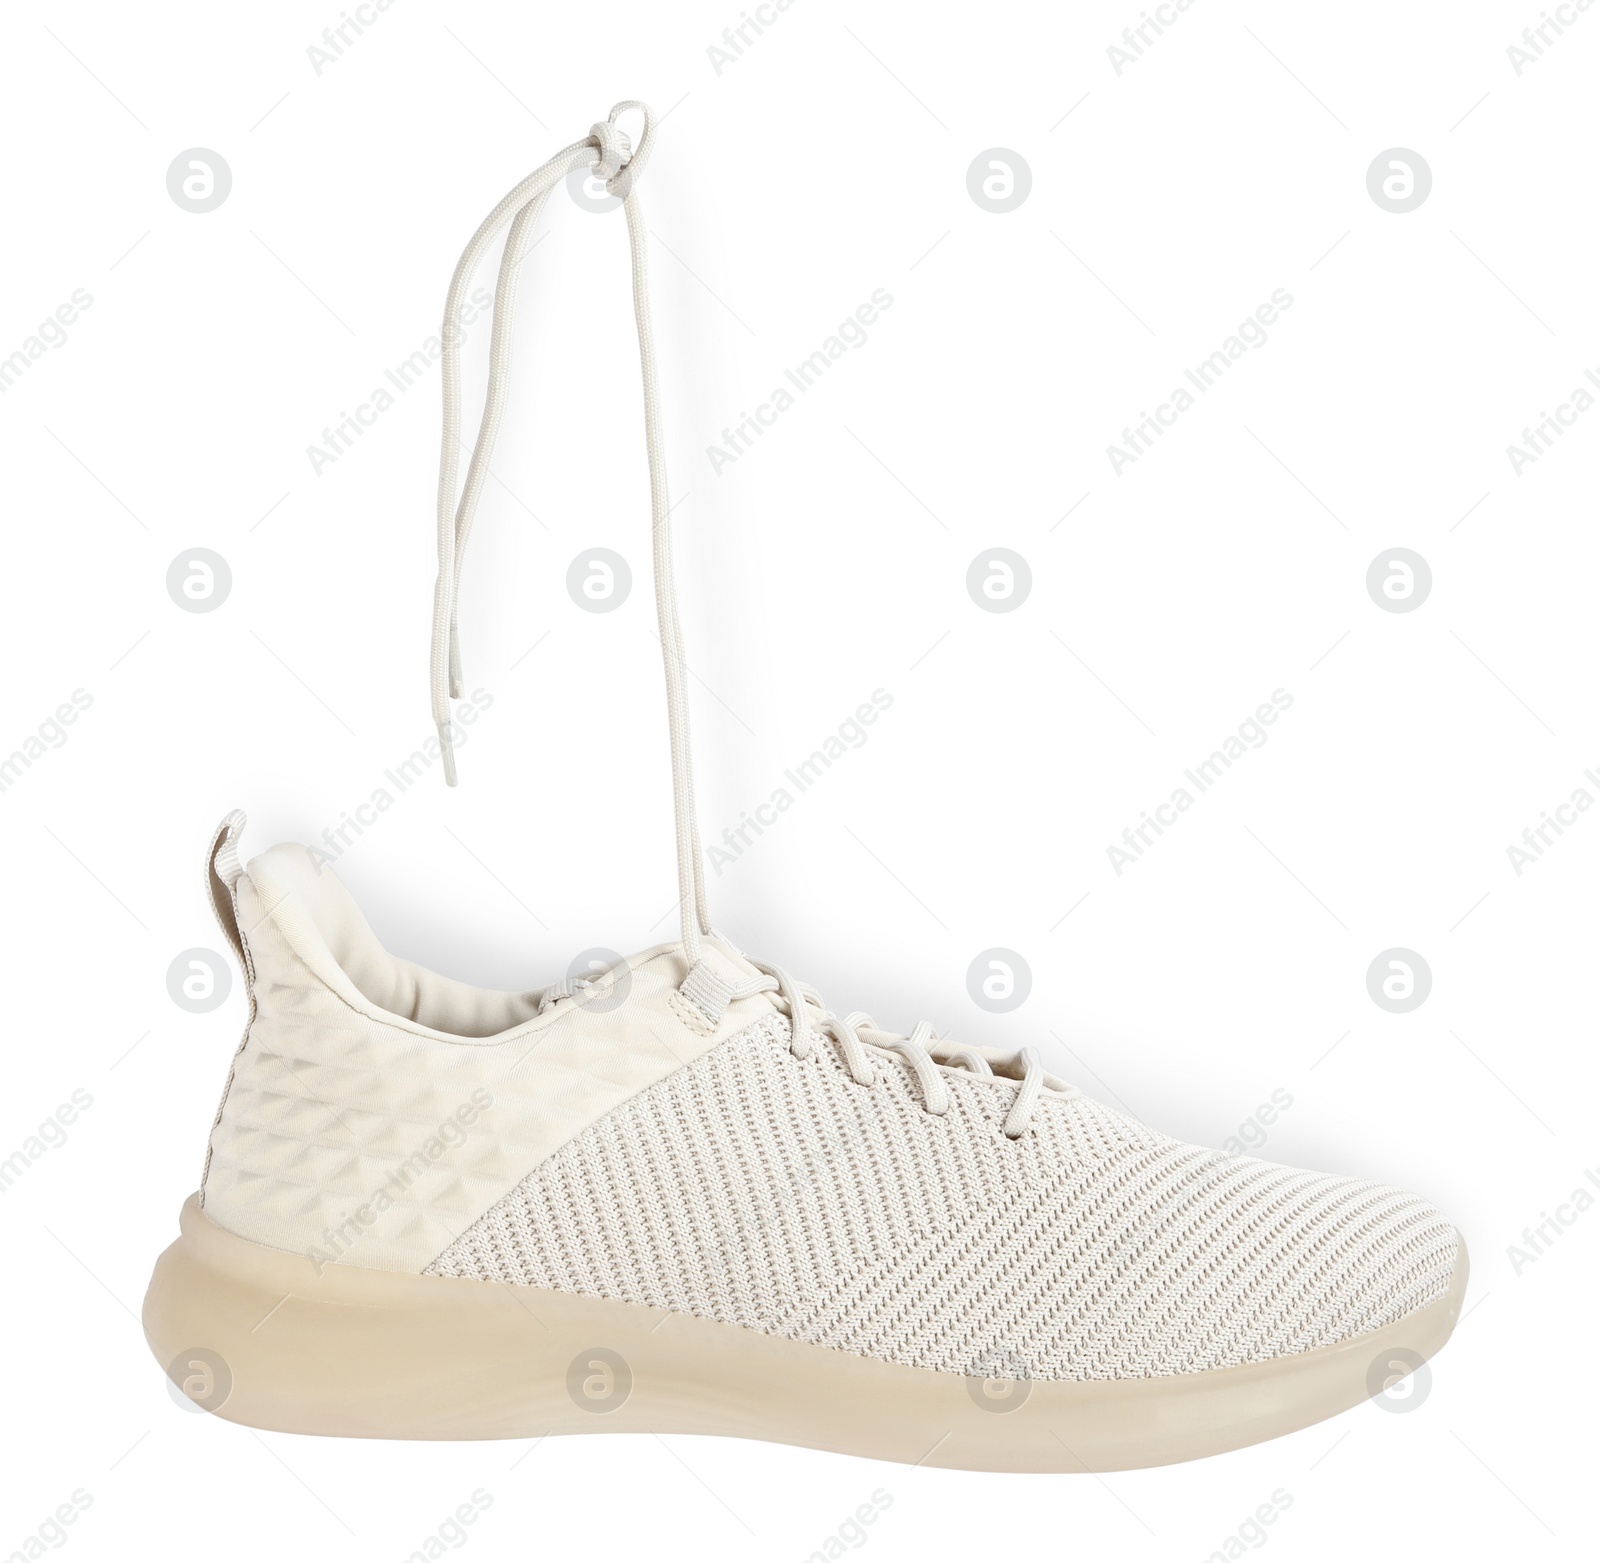 Photo of Stylish shoe with laces hanging on white background